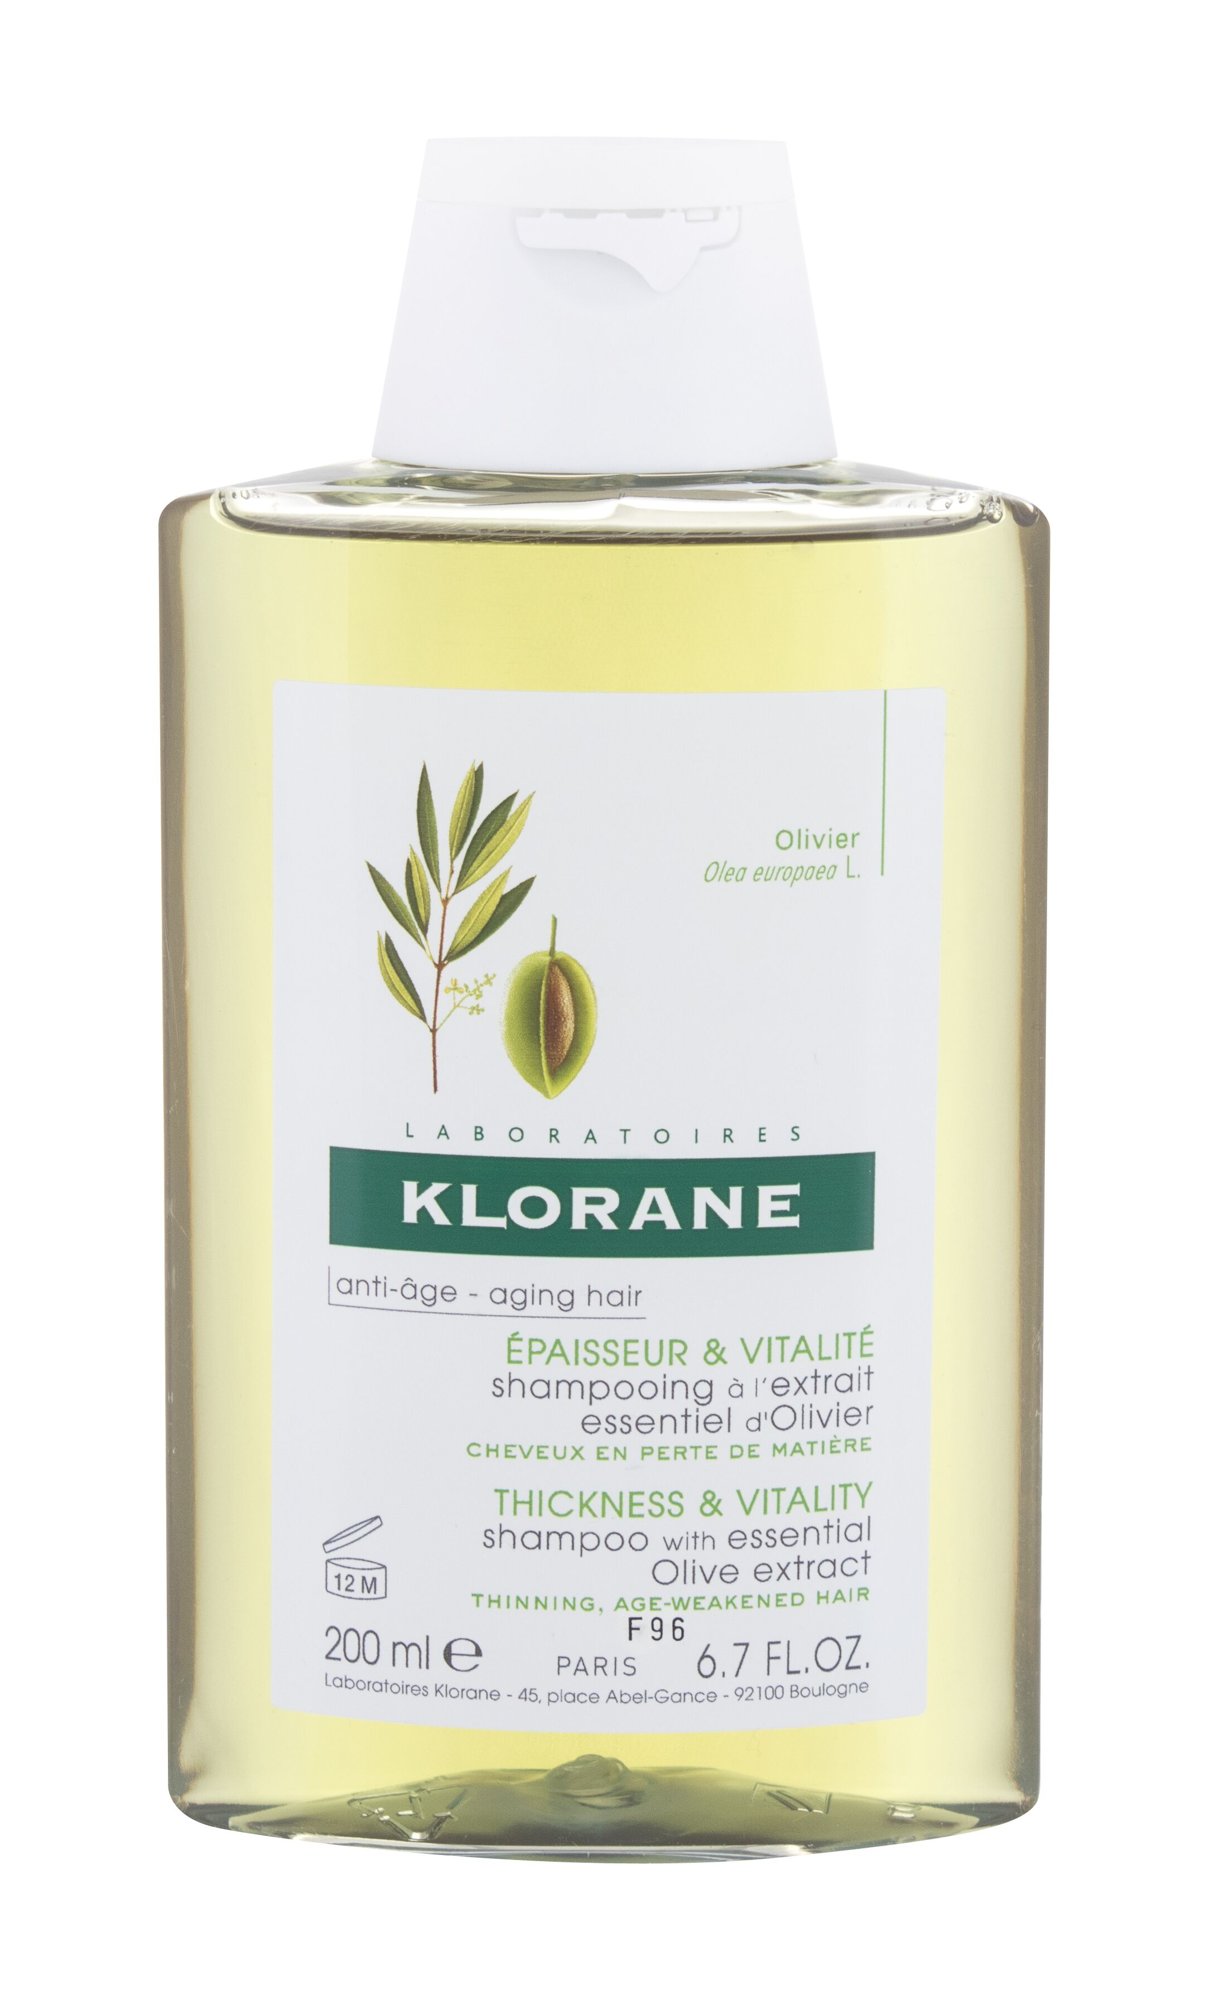 Klorane Olive